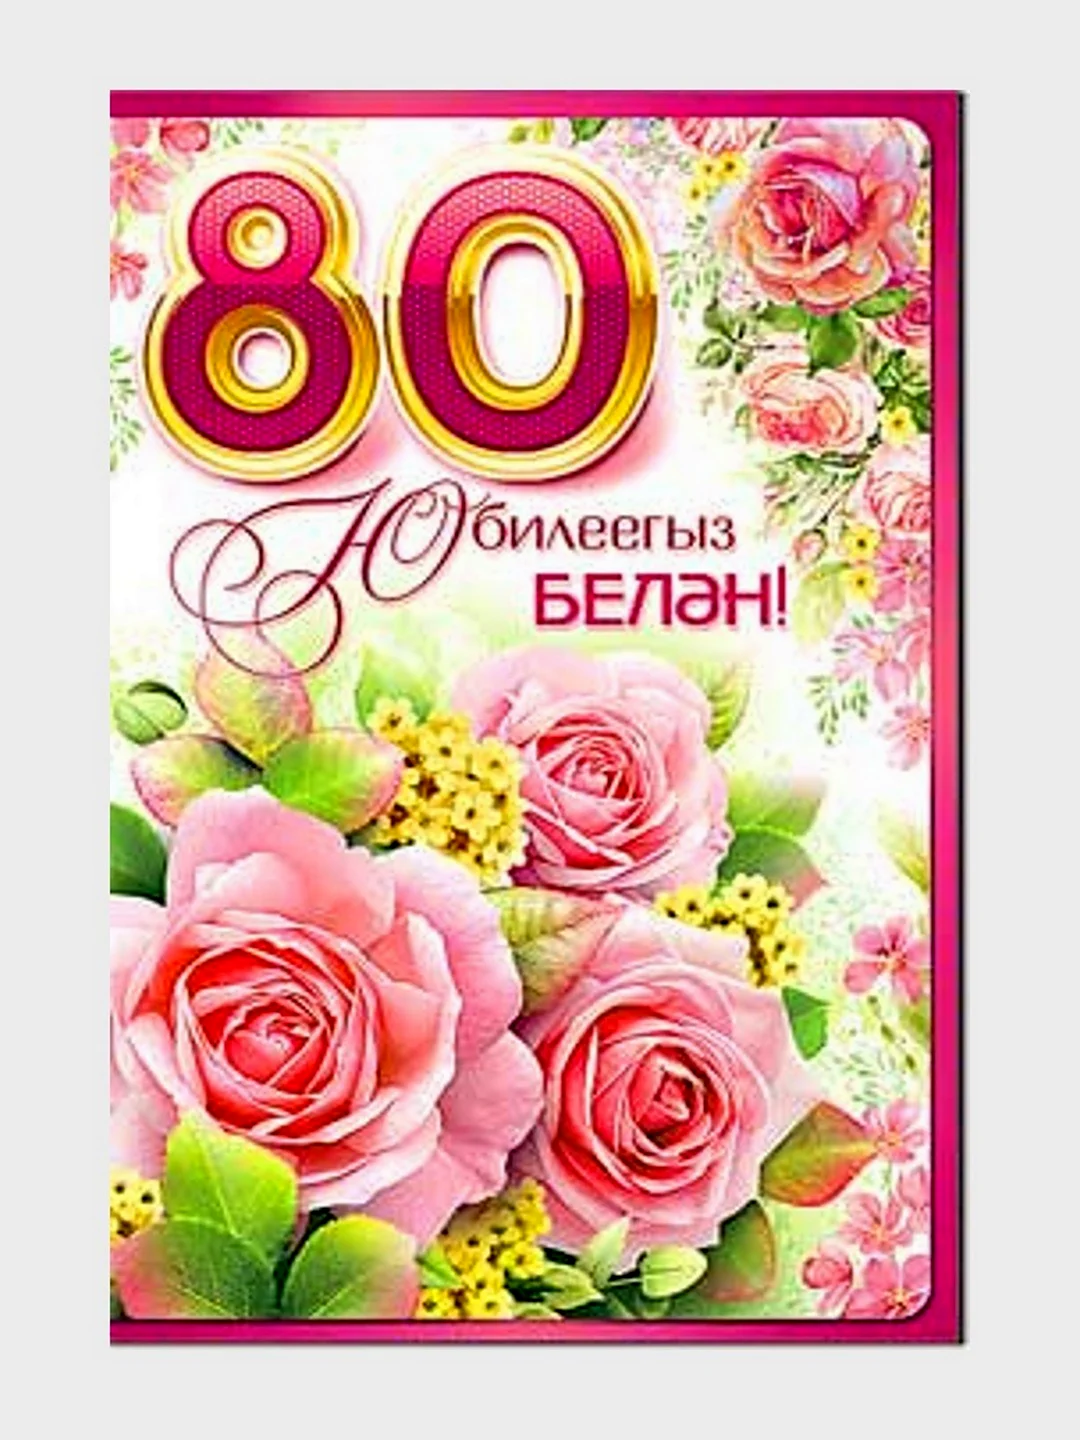 Юбилей 80 лет на татарском. Открытка. Поздравление